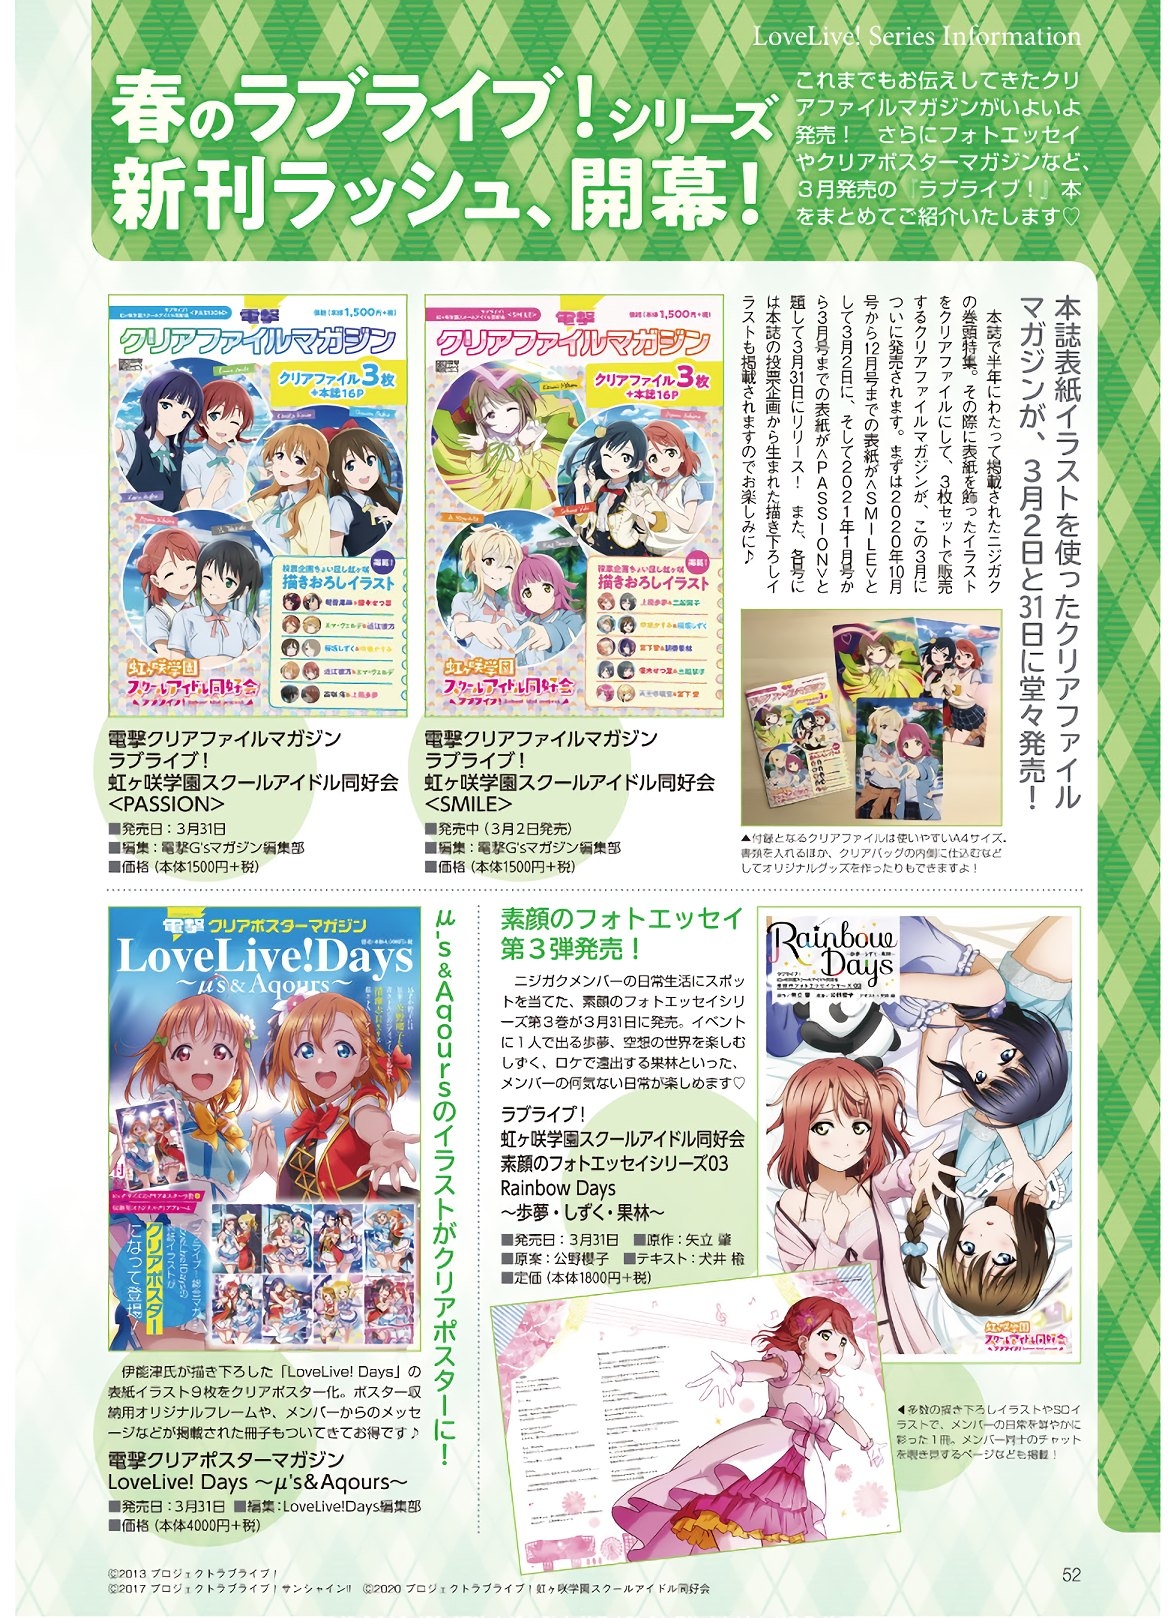 Dengeki G's Magazine #286 - May 2021 49